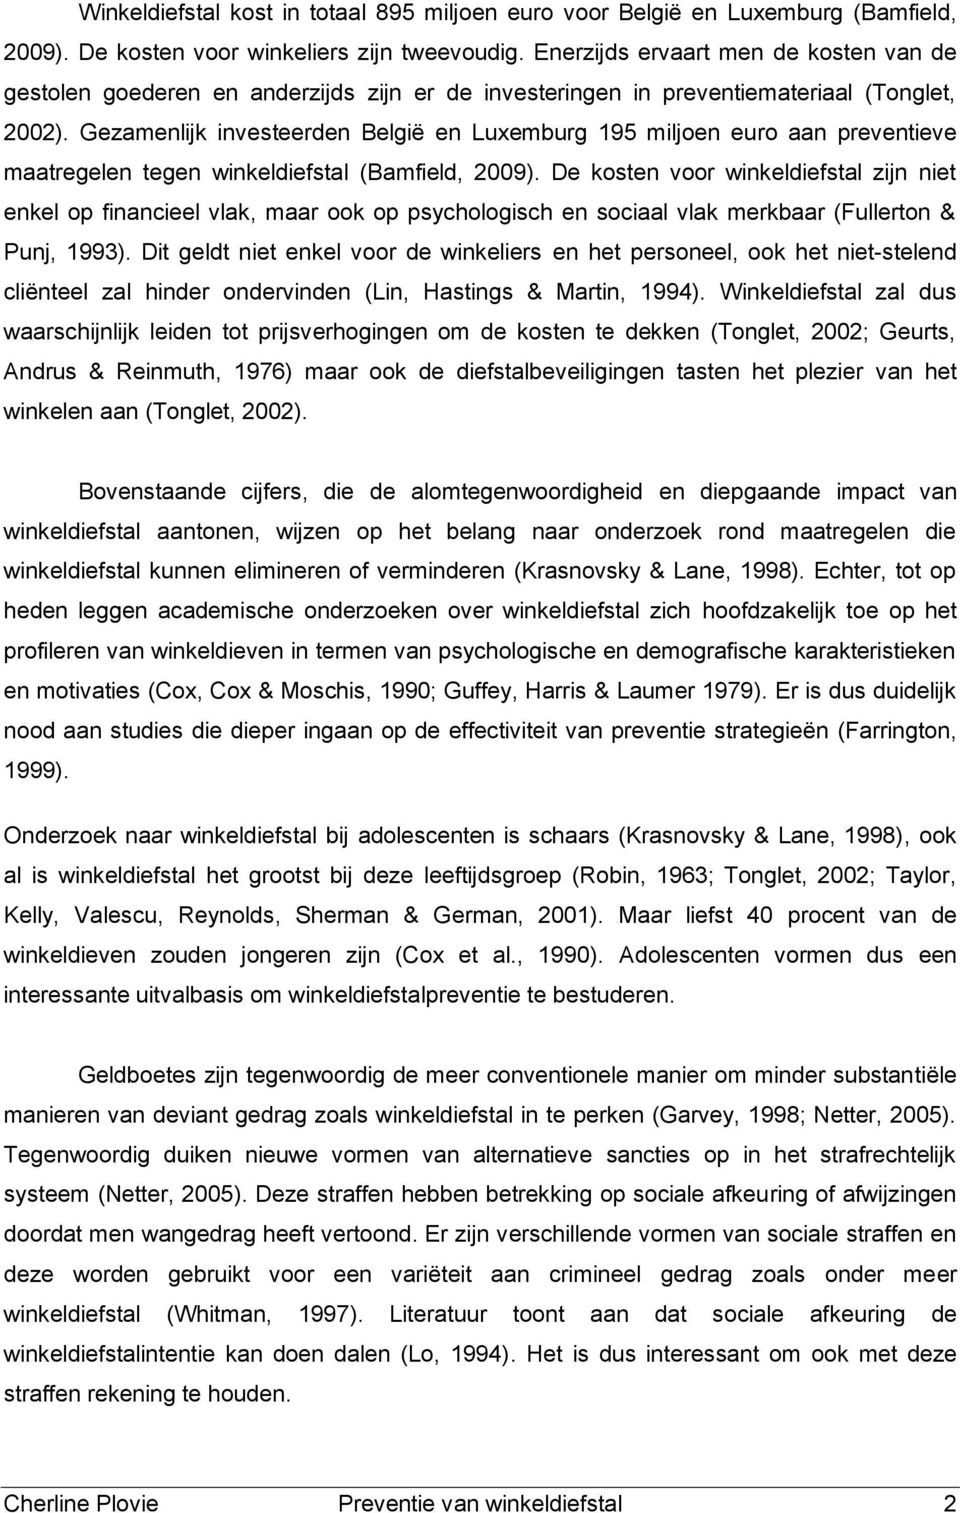 Gezamenlijk investeerden België en Luxemburg 195 miljen eur aan preventieve maatregelen tegen winkeldiefstal (Bamfield, 2009).